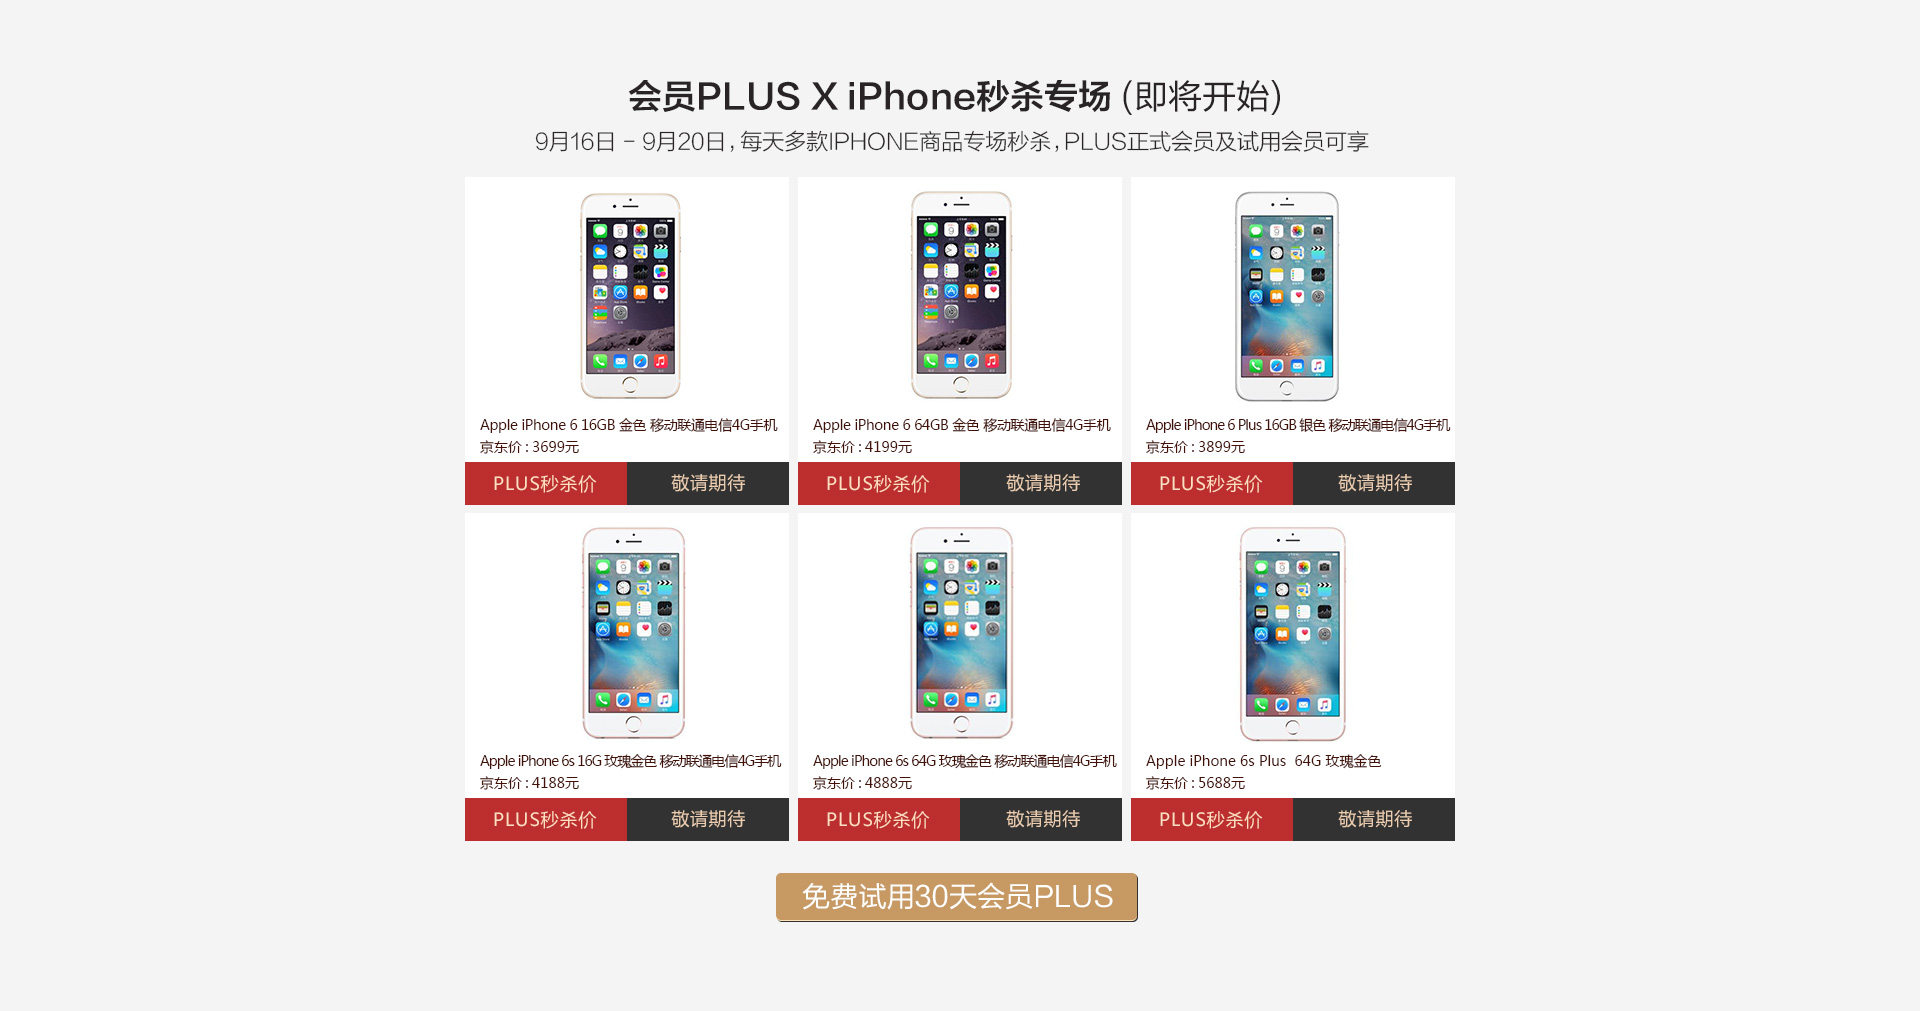 会员PLUS - iPhone7必购码限量专享 - 京东全品